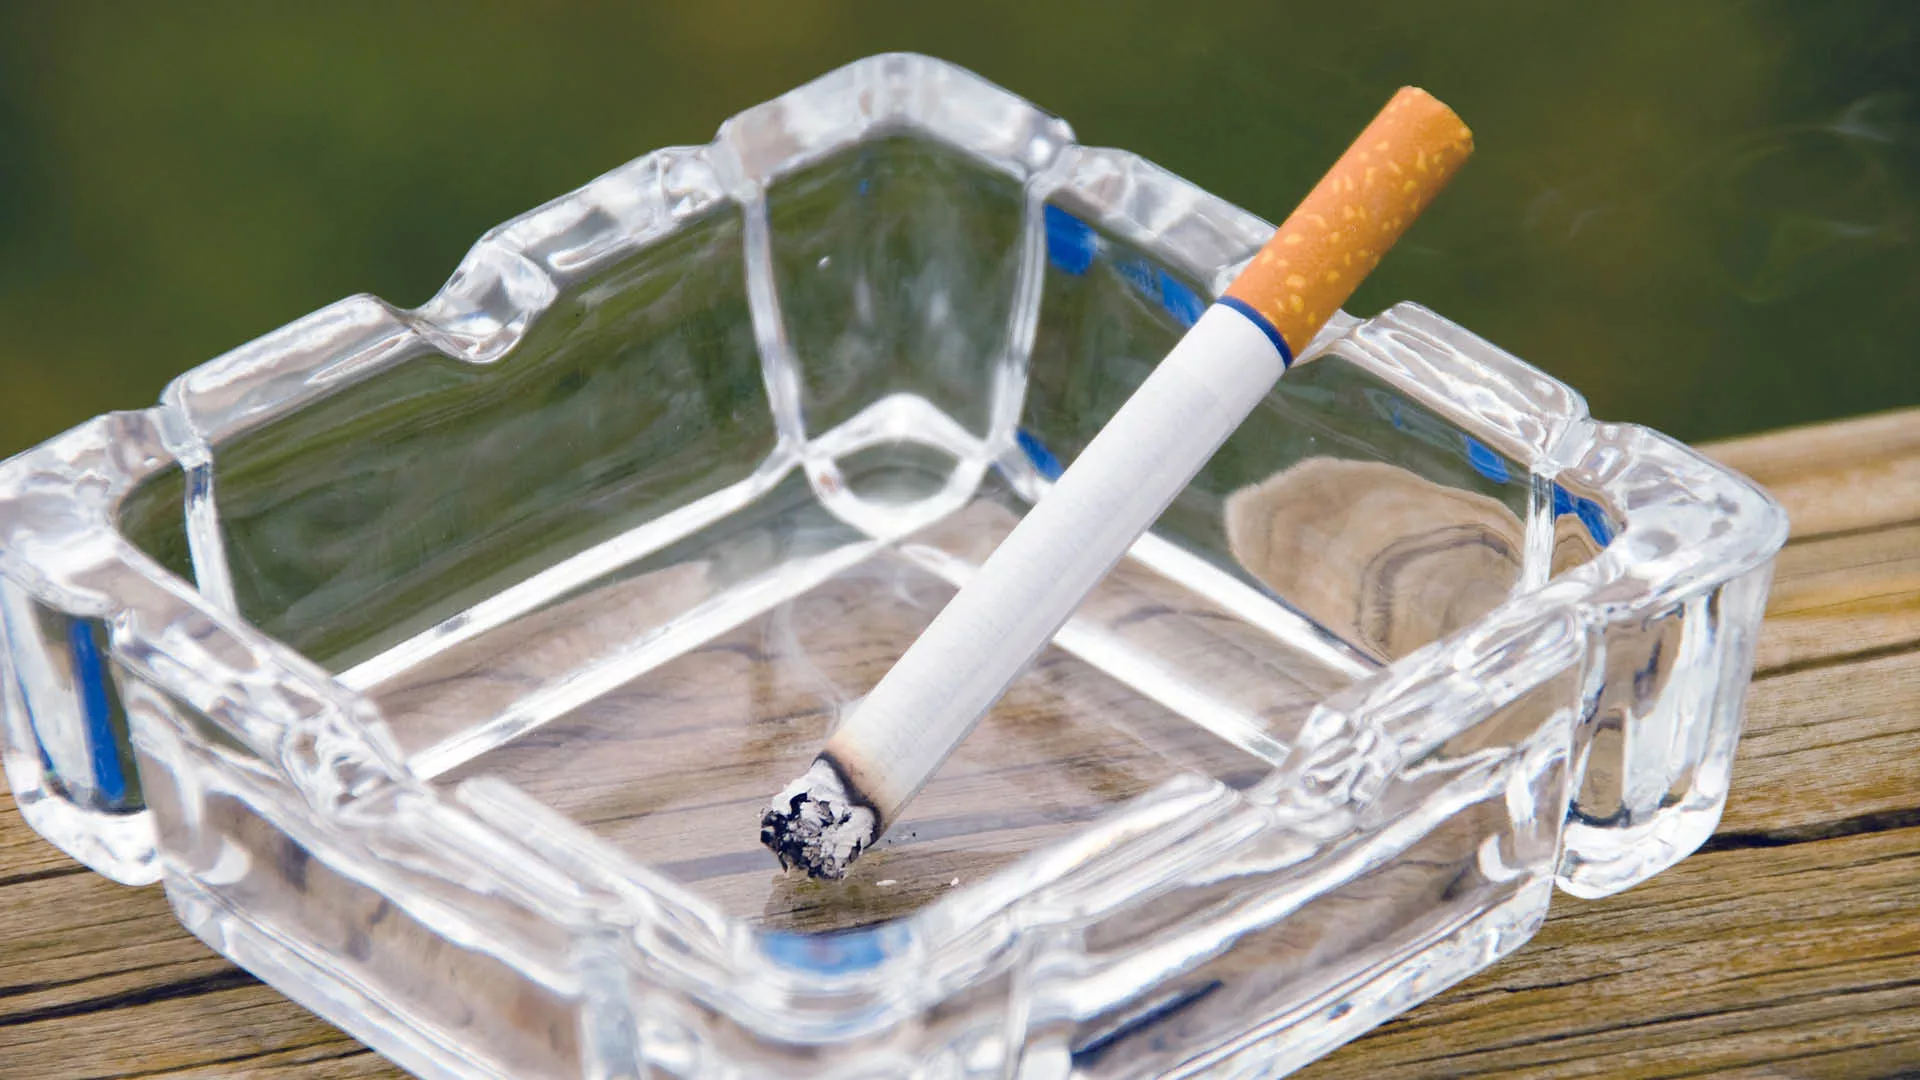 Lit cigarette in a glass ashtray